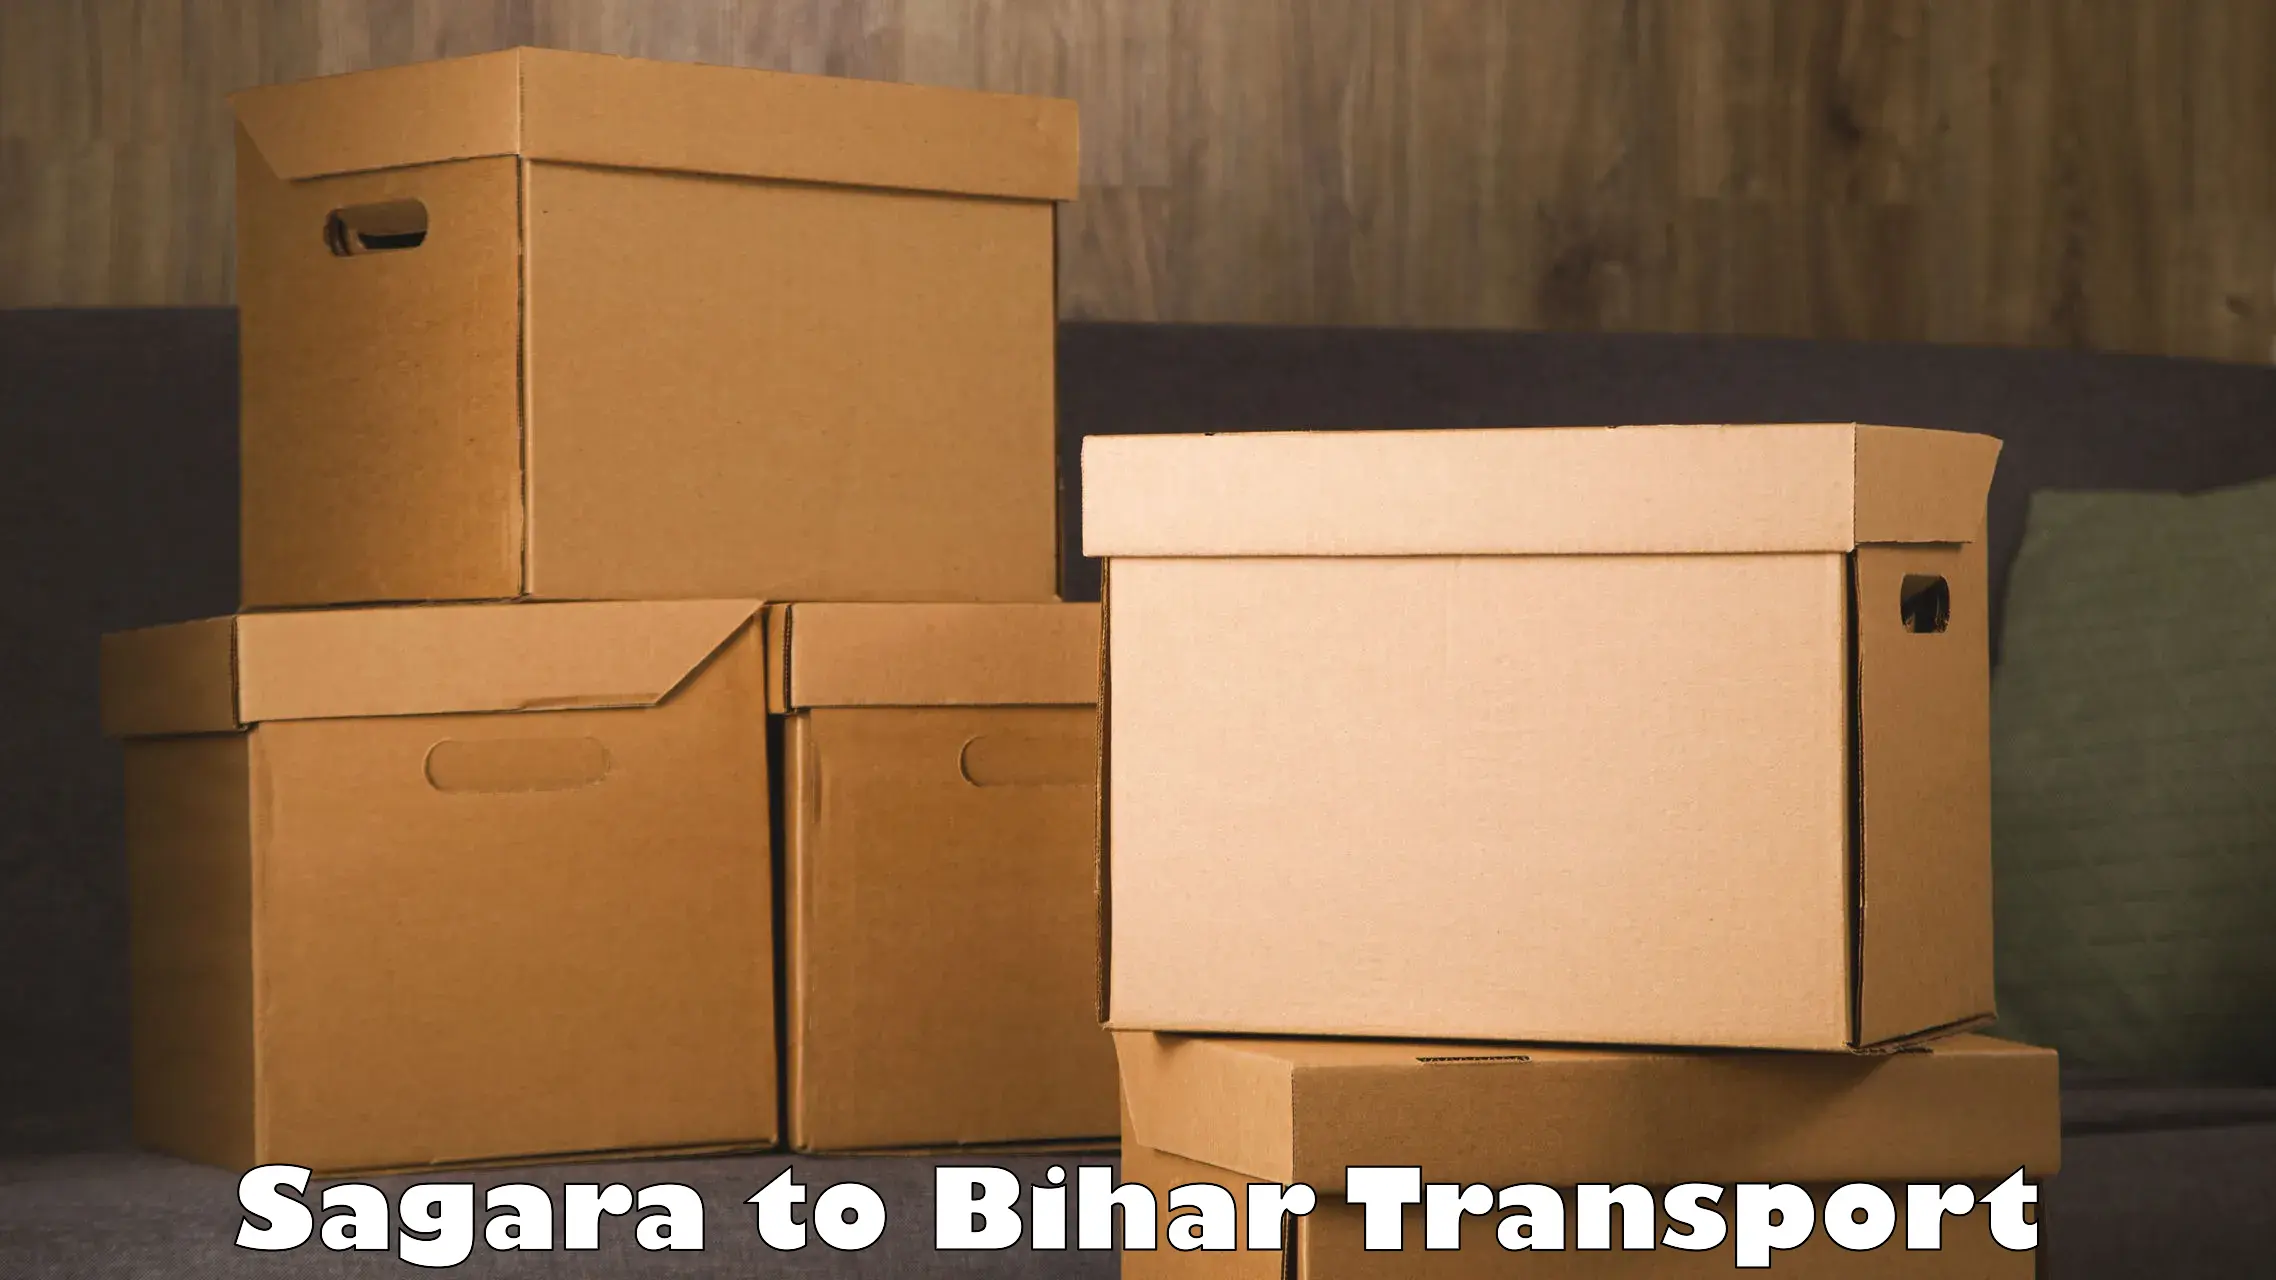 Air freight transport services Sagara to Bihar